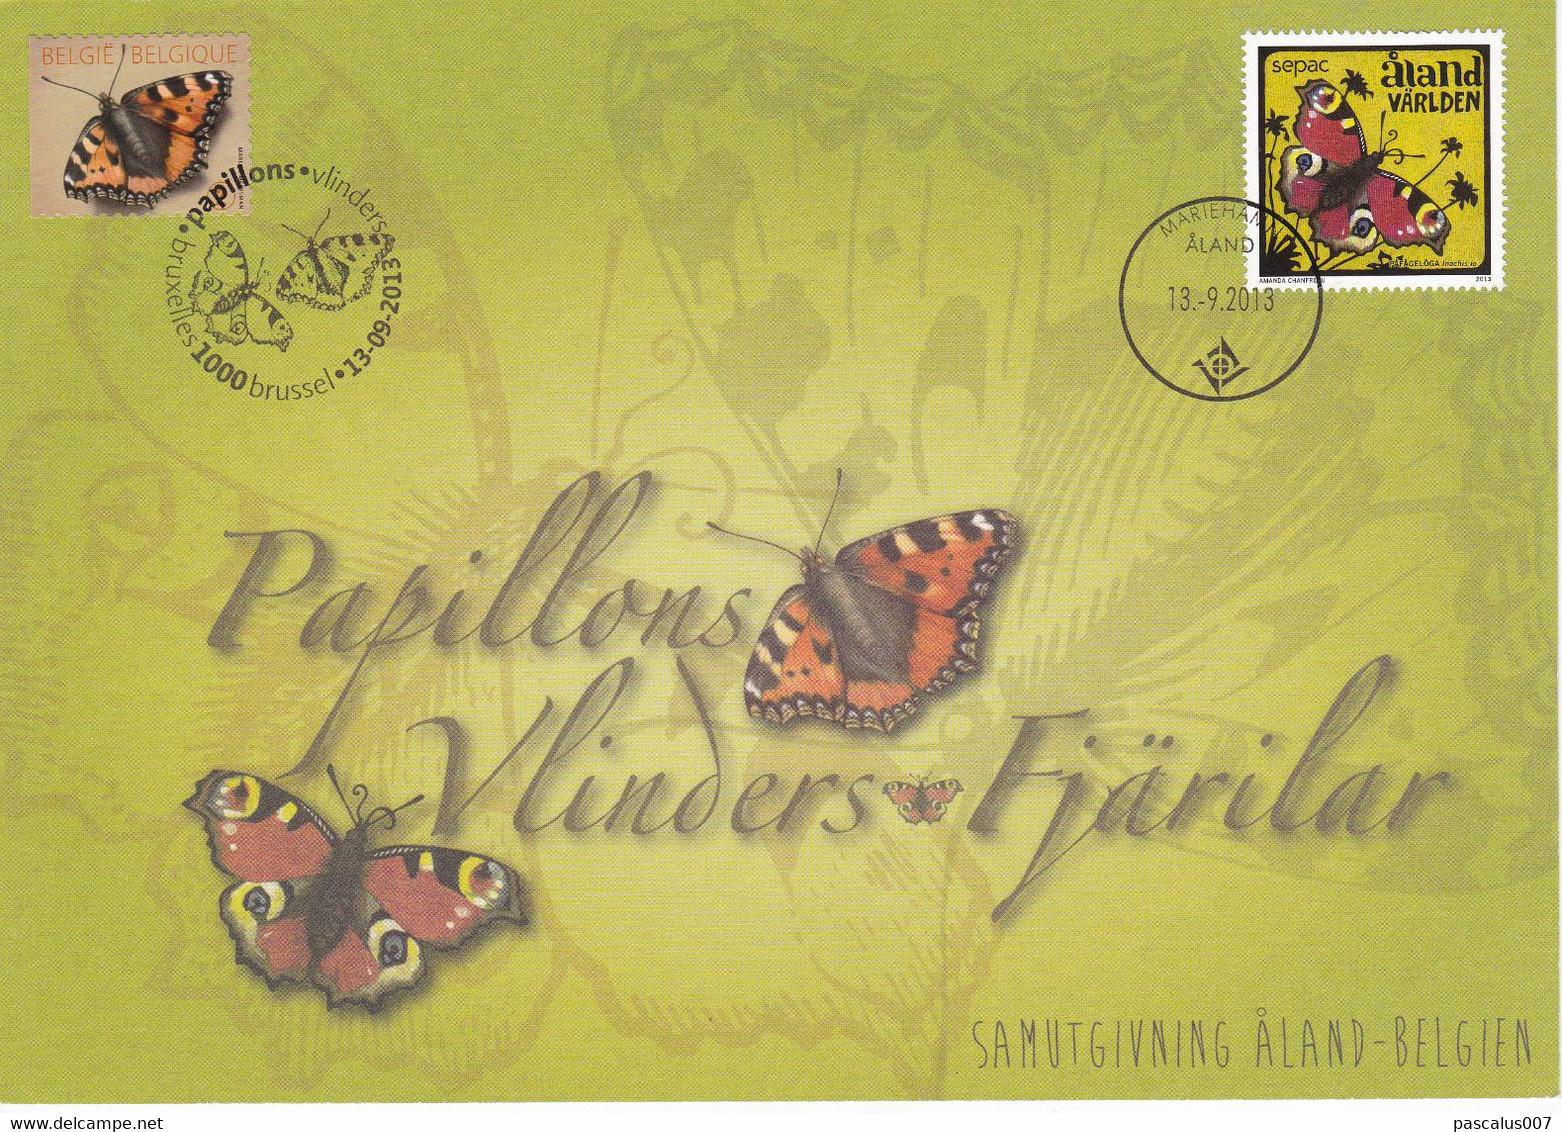 18-47 4321  EC CS HK BK 4321 FDC Emission Commune Belgique Aland  Carte Souvenir  Insecte Papillon Aglais Urticae Vlinde - Cartas Commemorativas - Emisiones Comunes [HK]